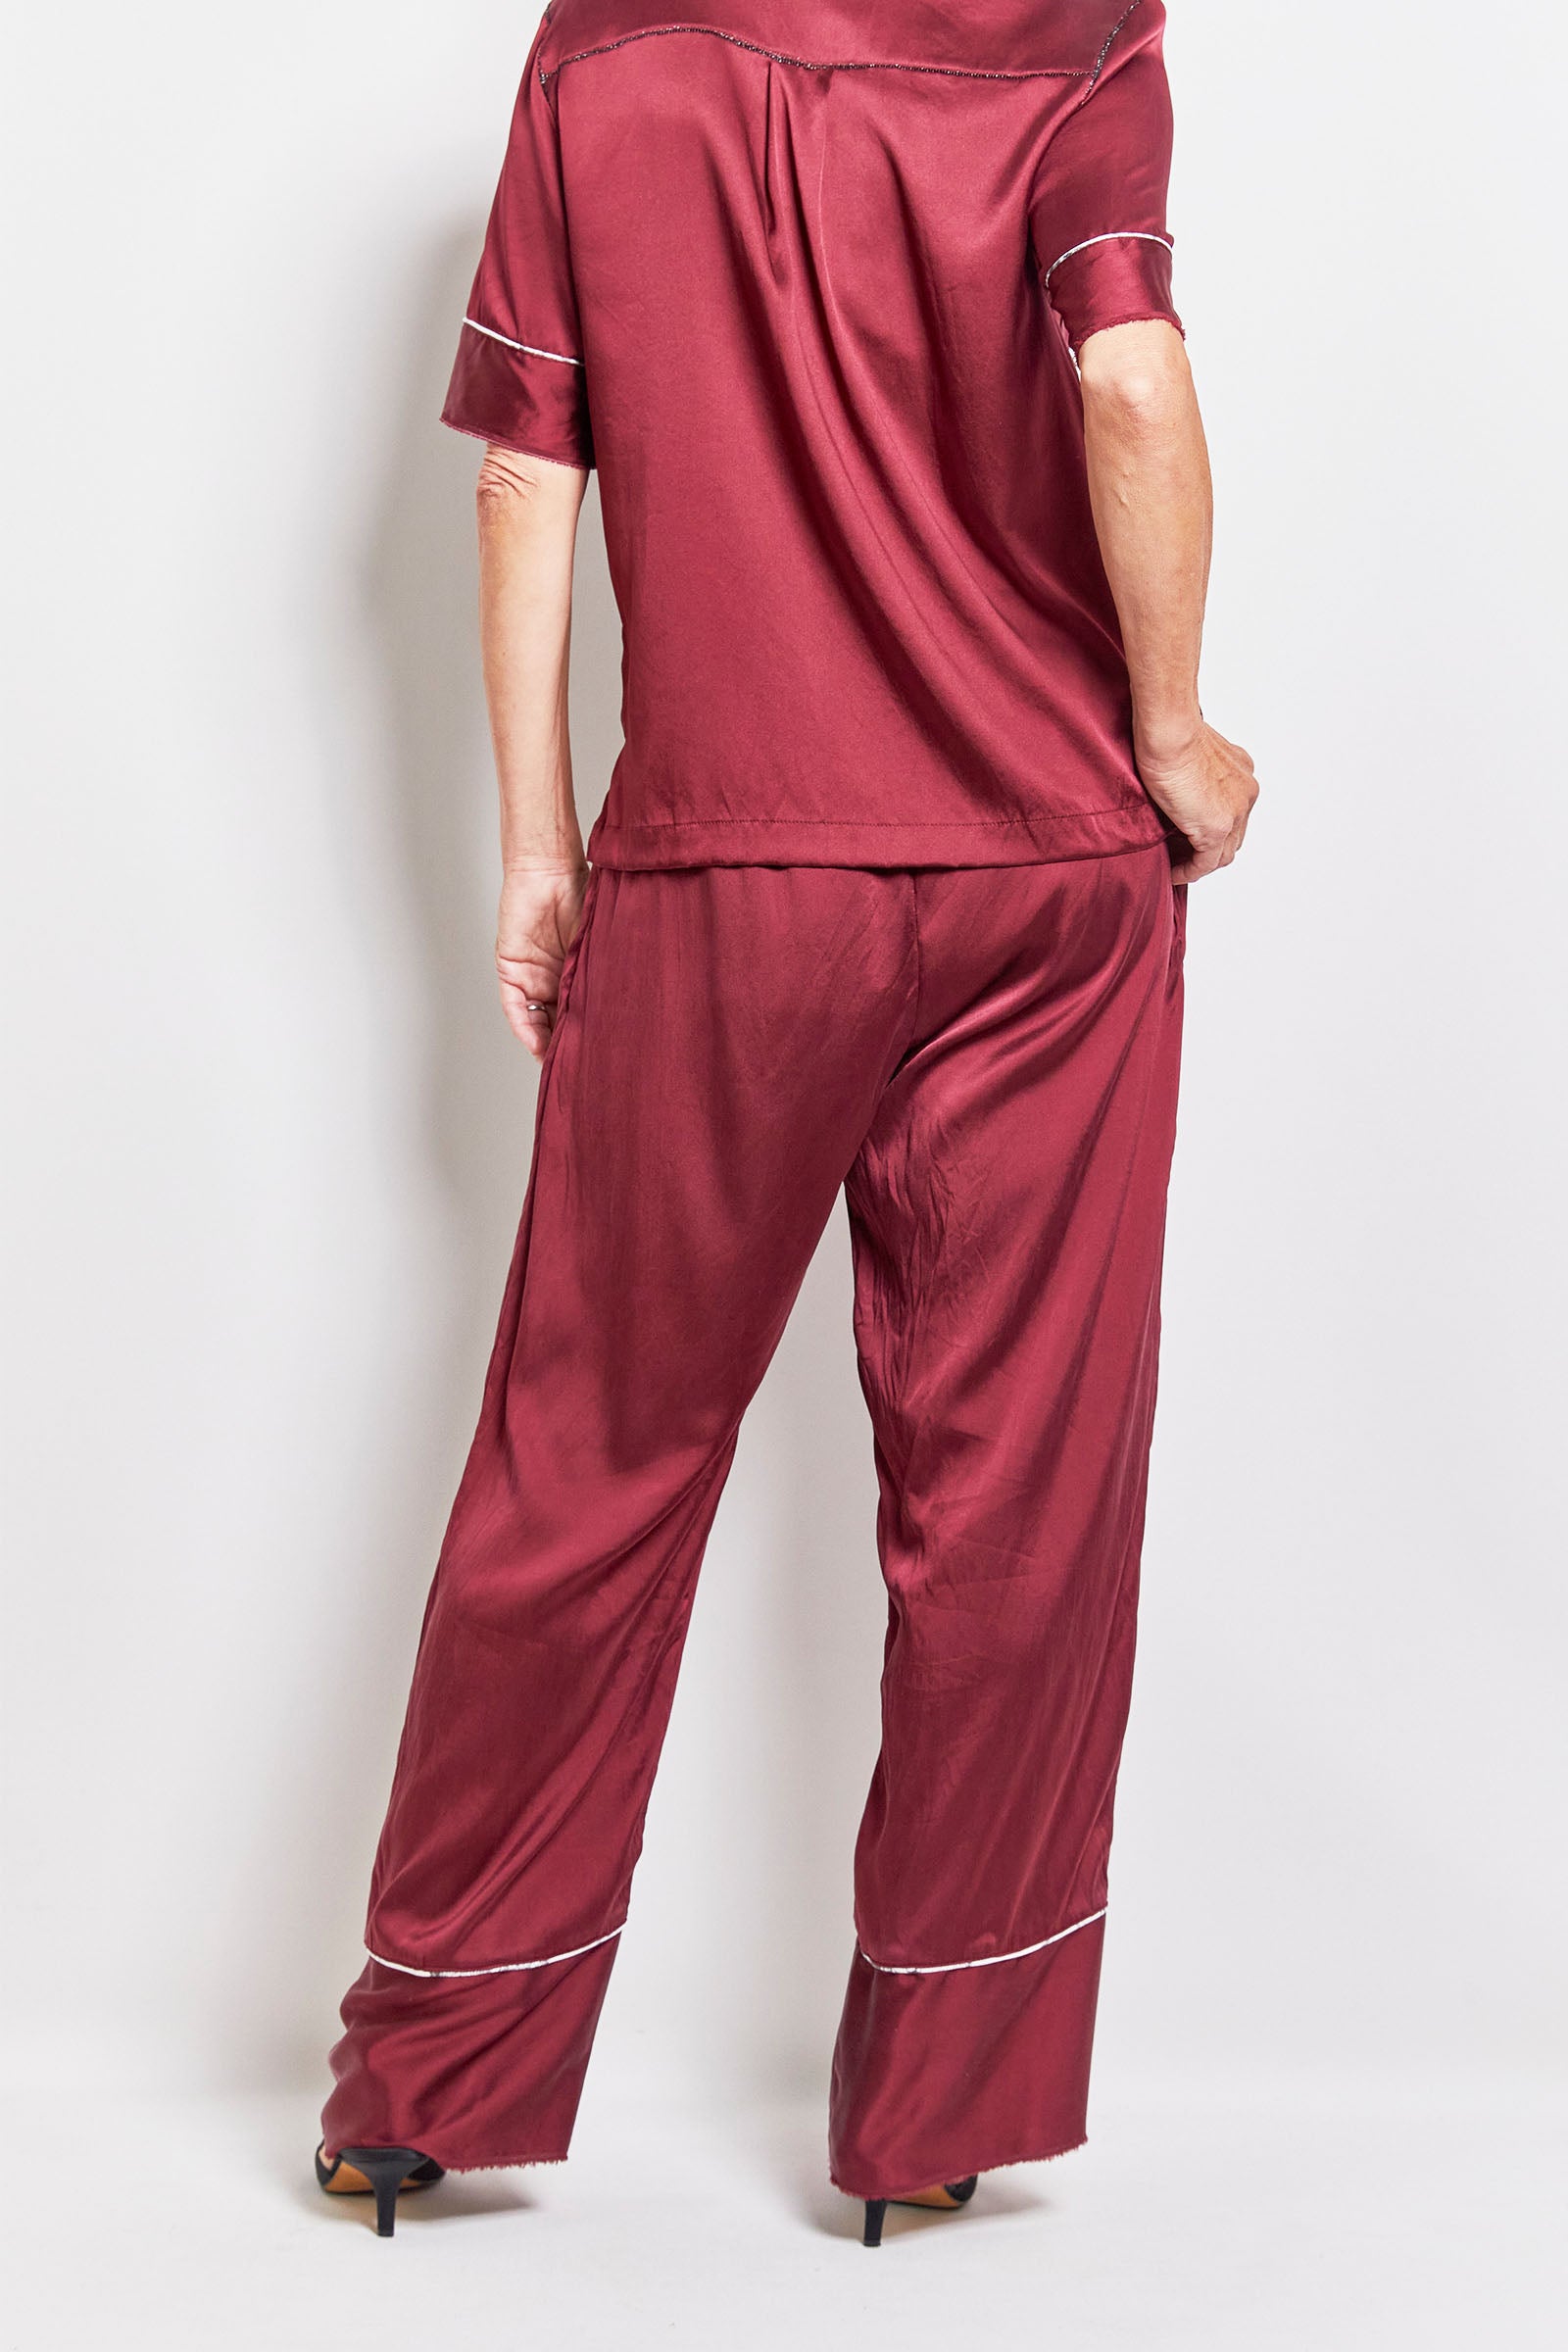 byfreer's cyril & friday shiraz daytime silk pyjama set.